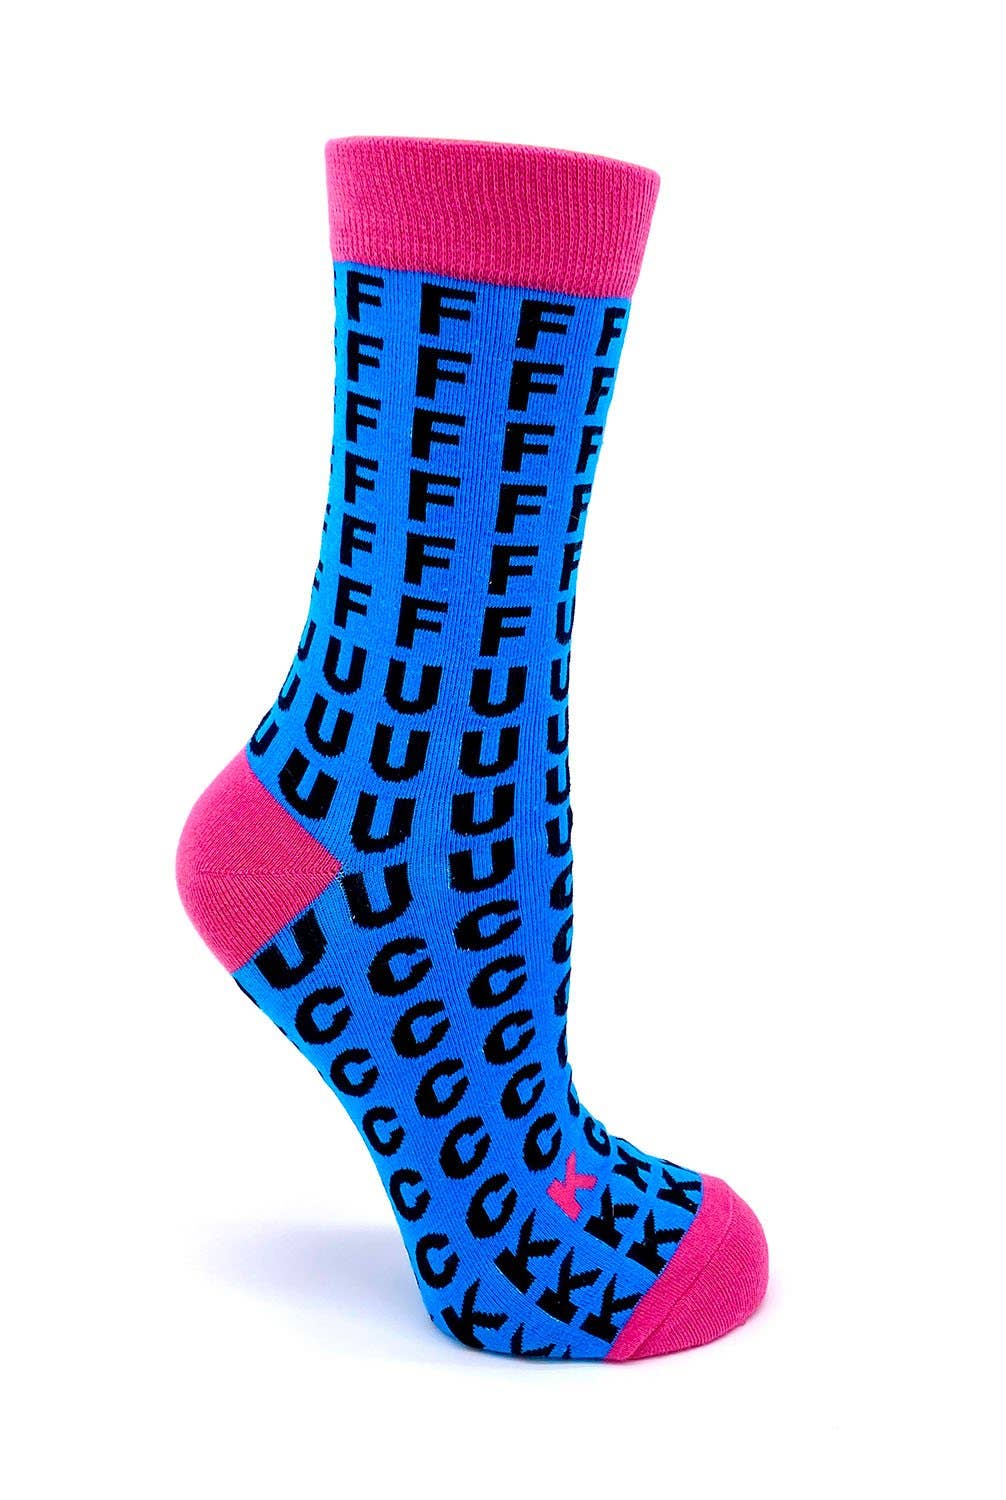 FFFFFFUUUUCCCCCKKK Women's Crew Socks